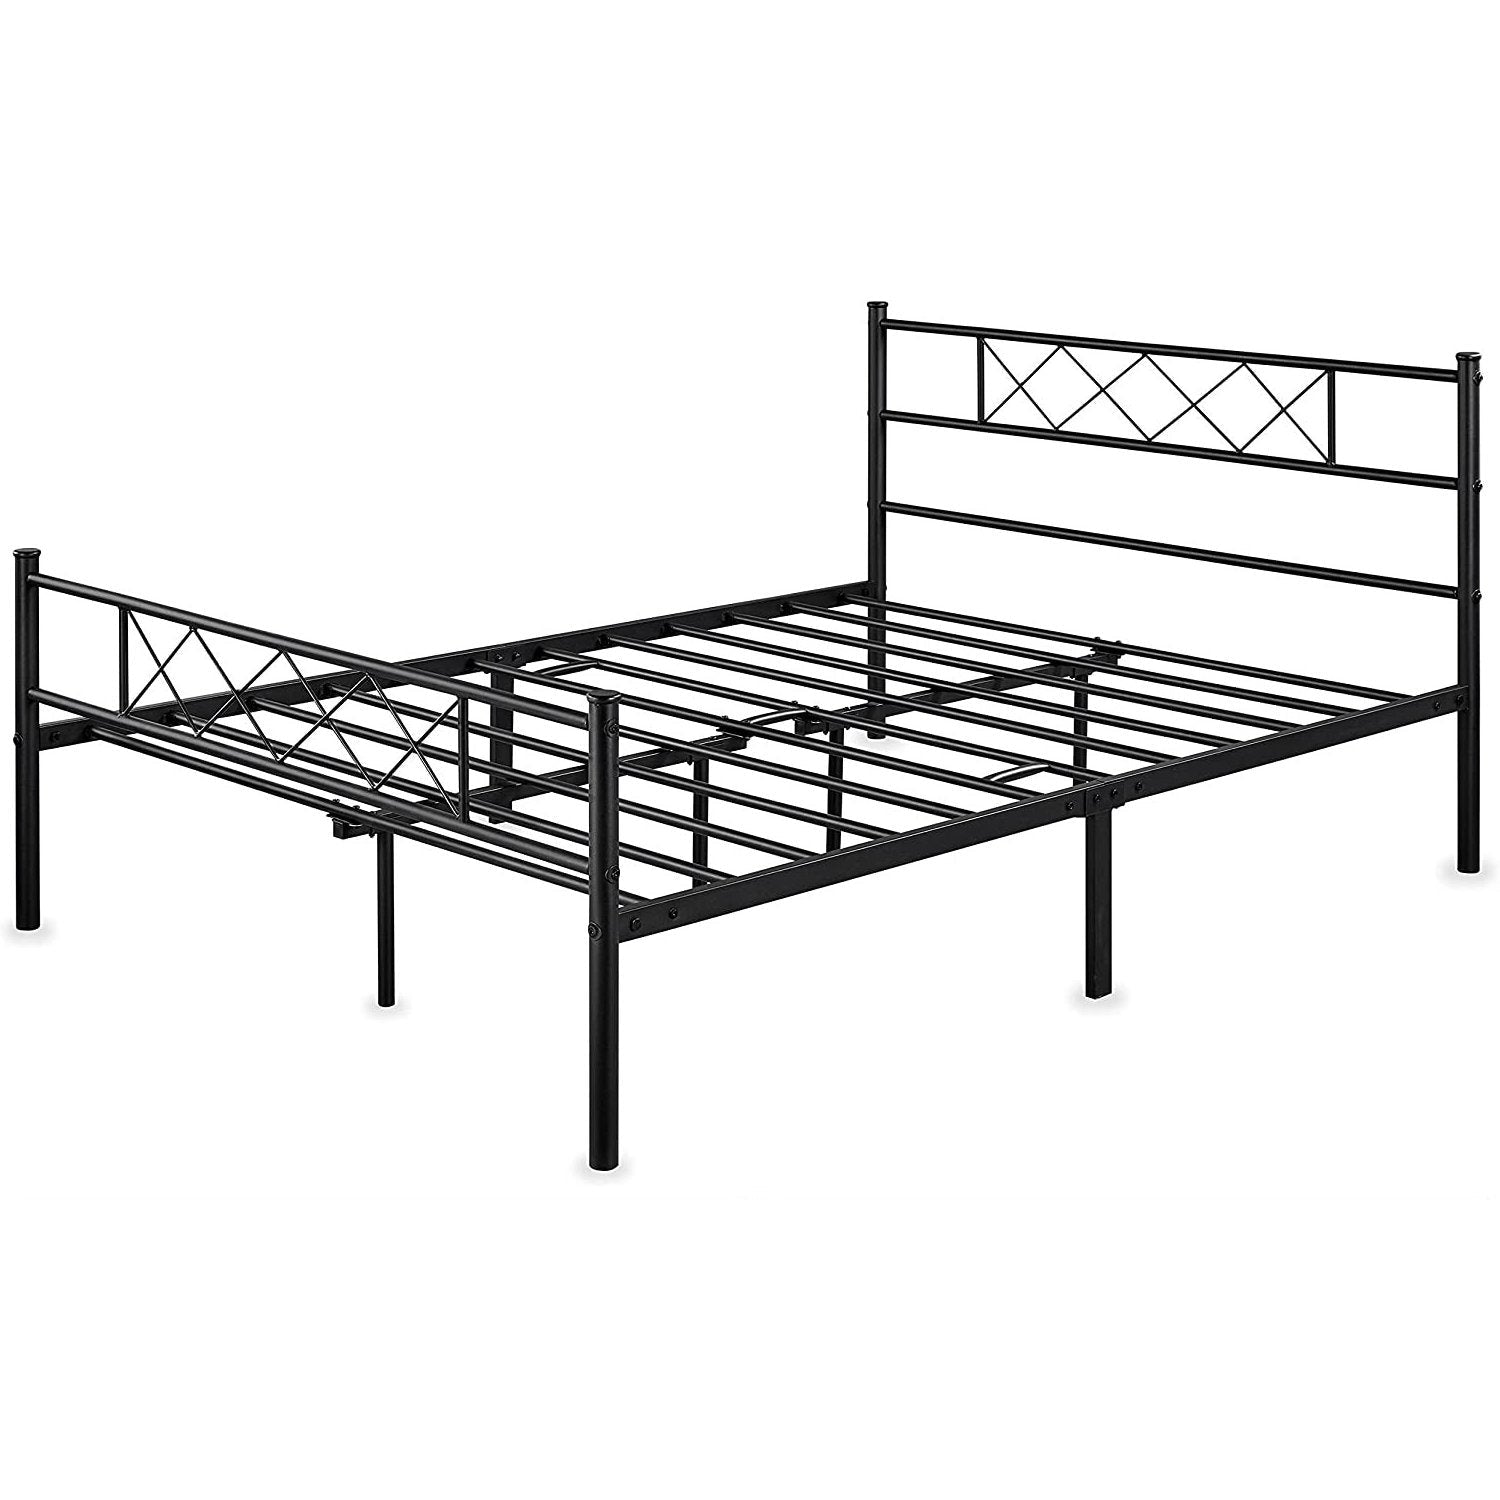 Bedroom > Bed Frames > Platform Beds - Full Size Traditional Powder Coated Slatted Metal Platform Bed